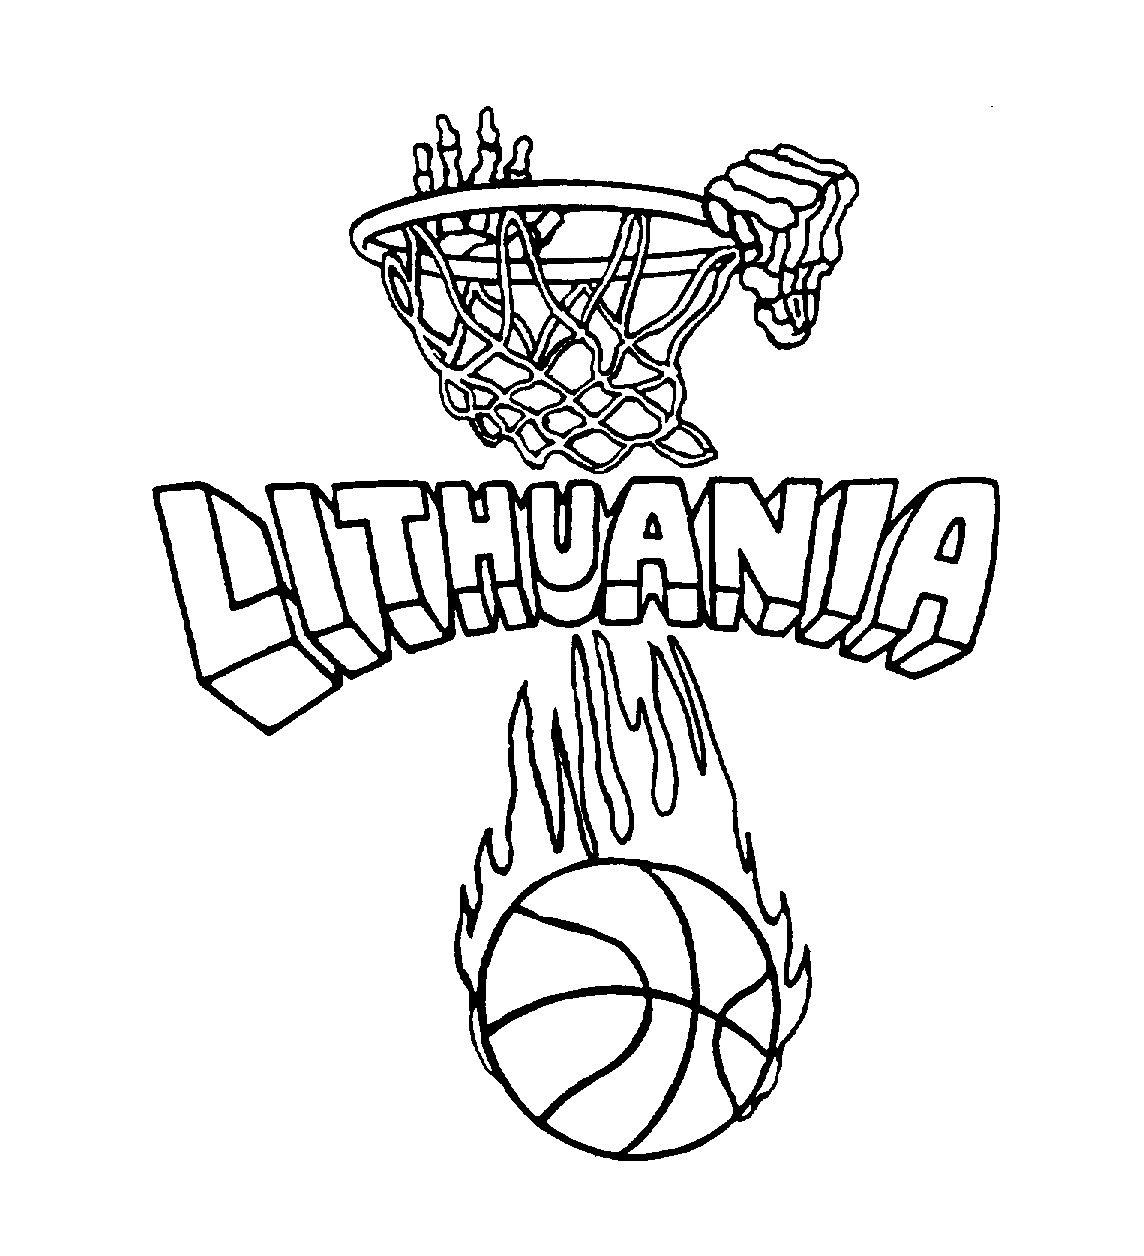  LITHUANIA